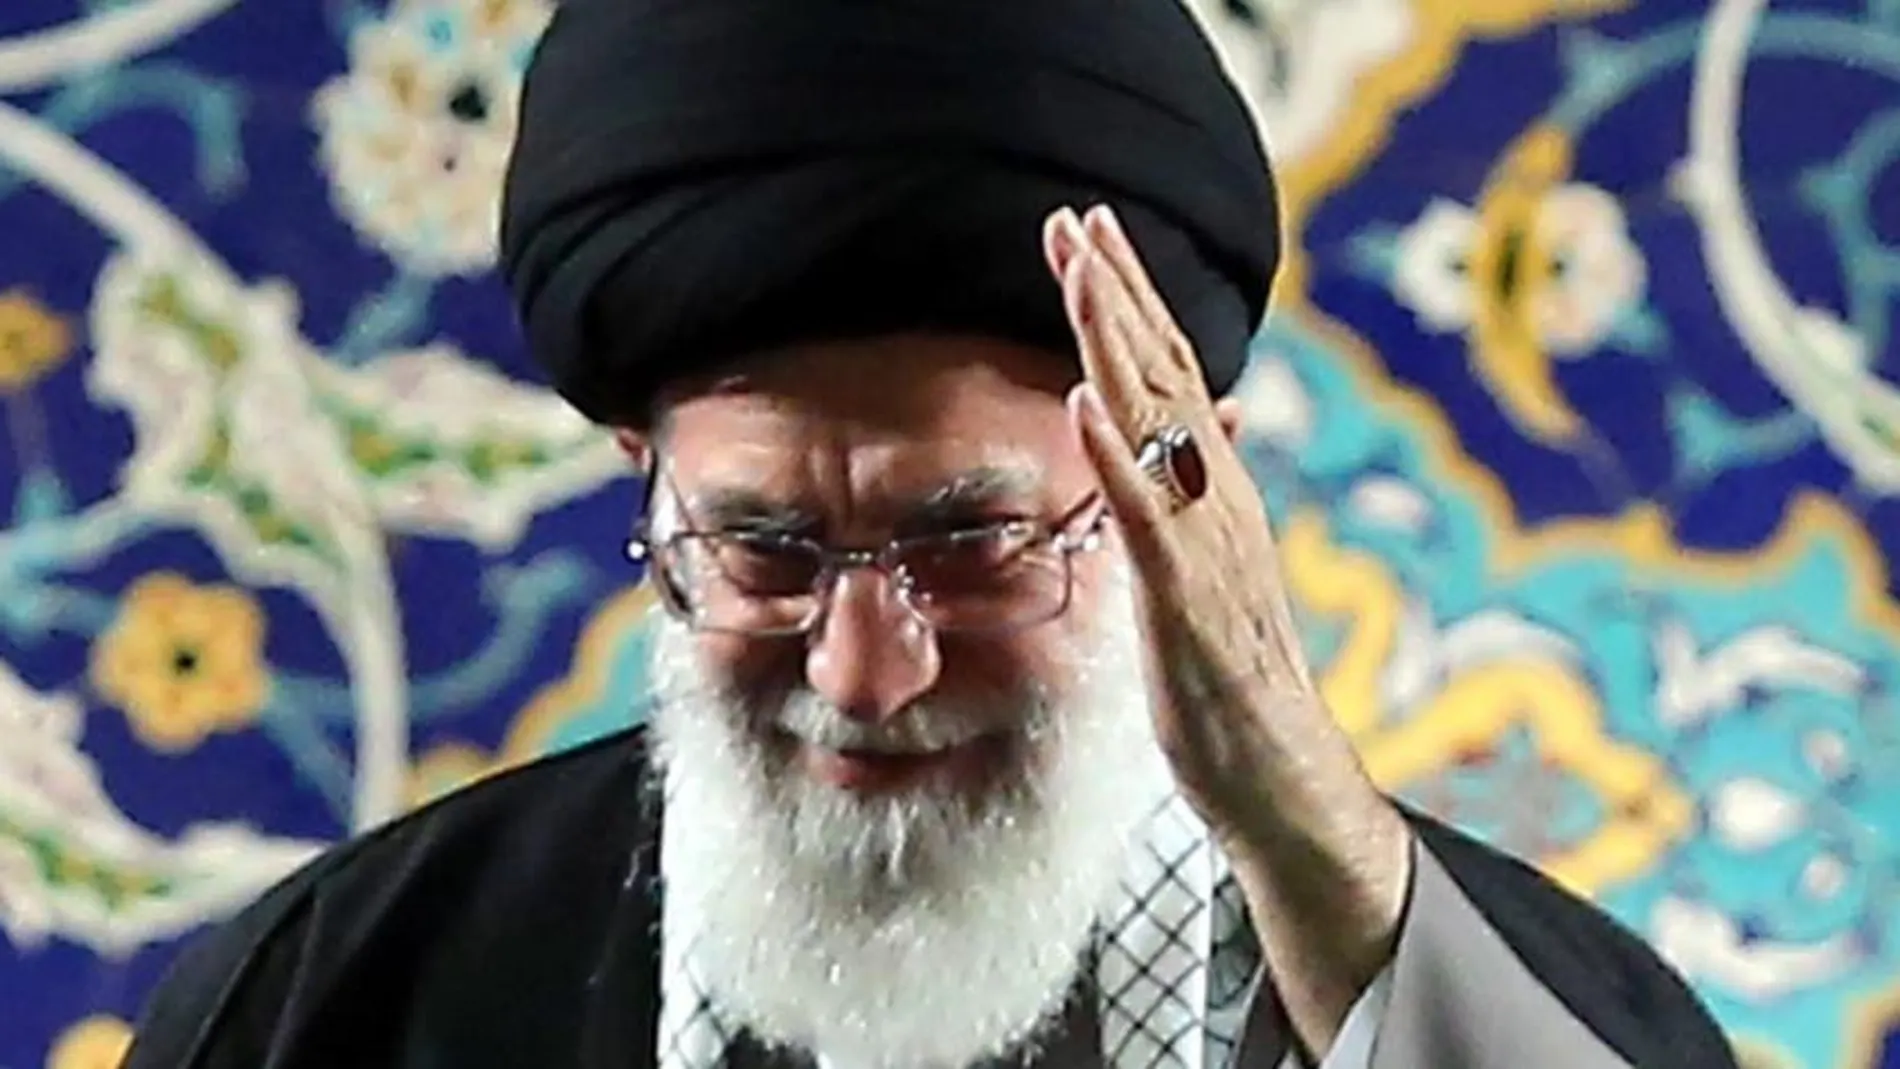 El líder supremo iraní Jameini